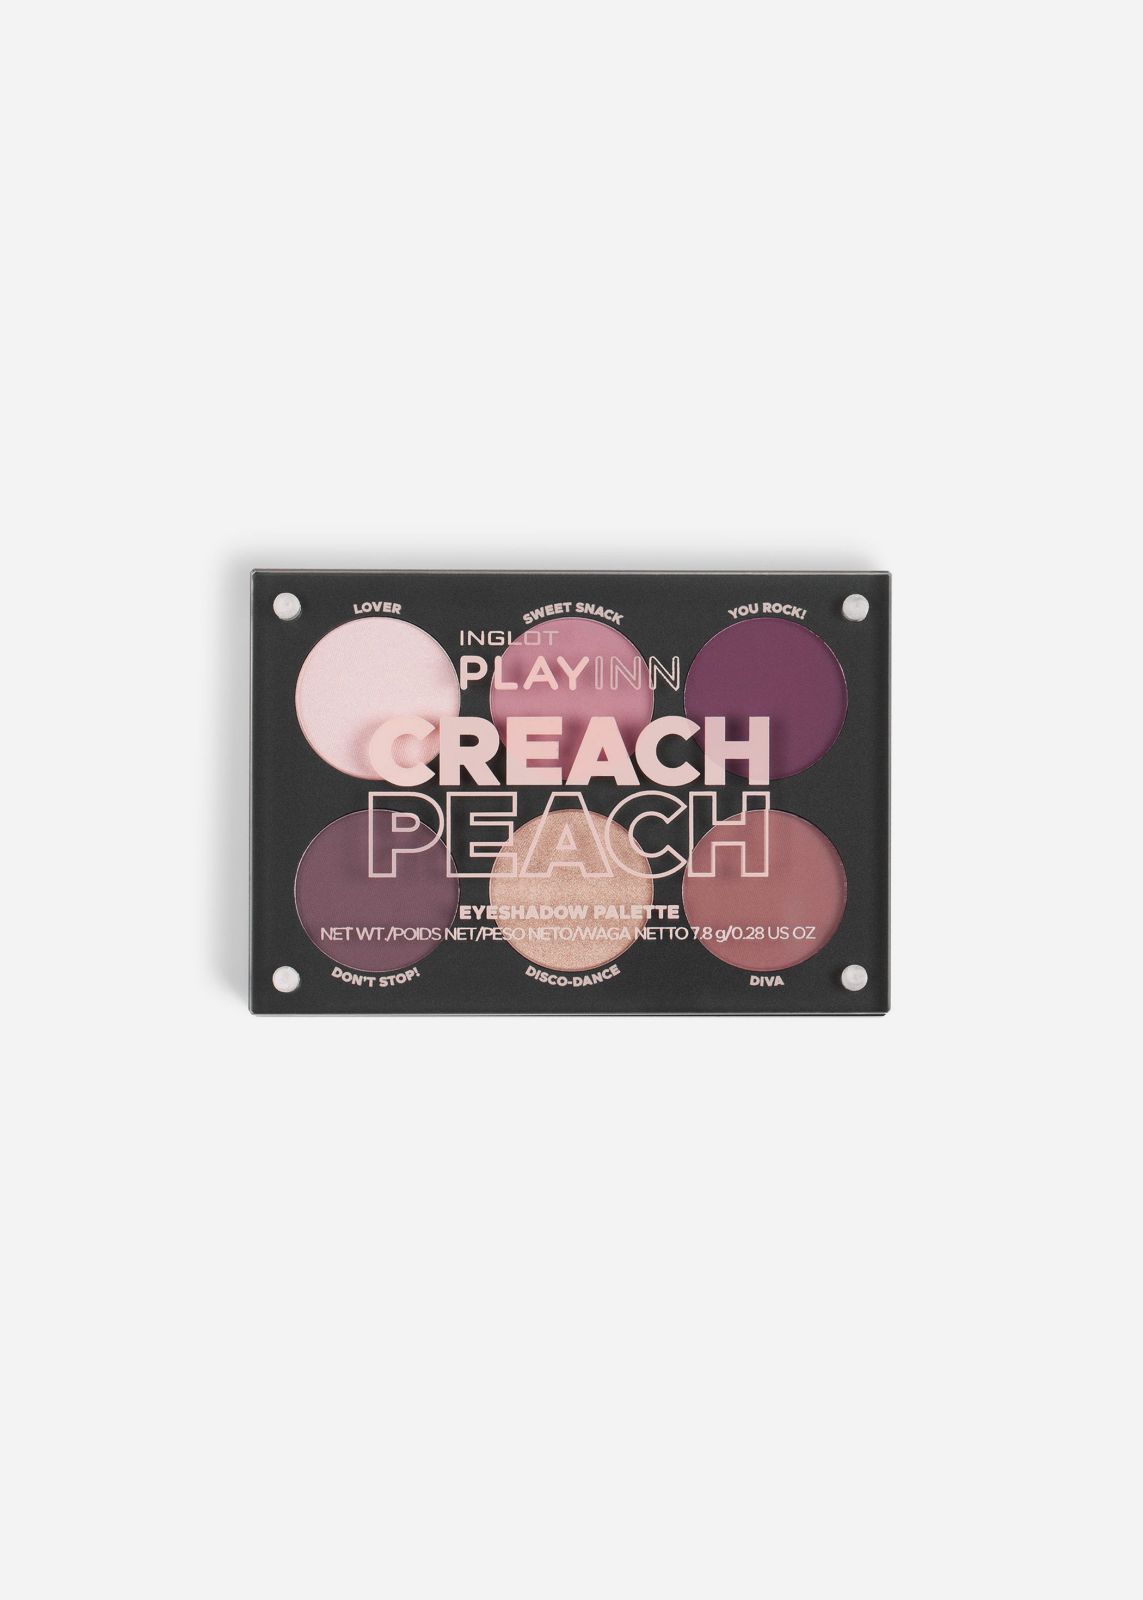  פלטת צלליות מגנטית Creach Peach Eyeshadow Palette של INGLOT